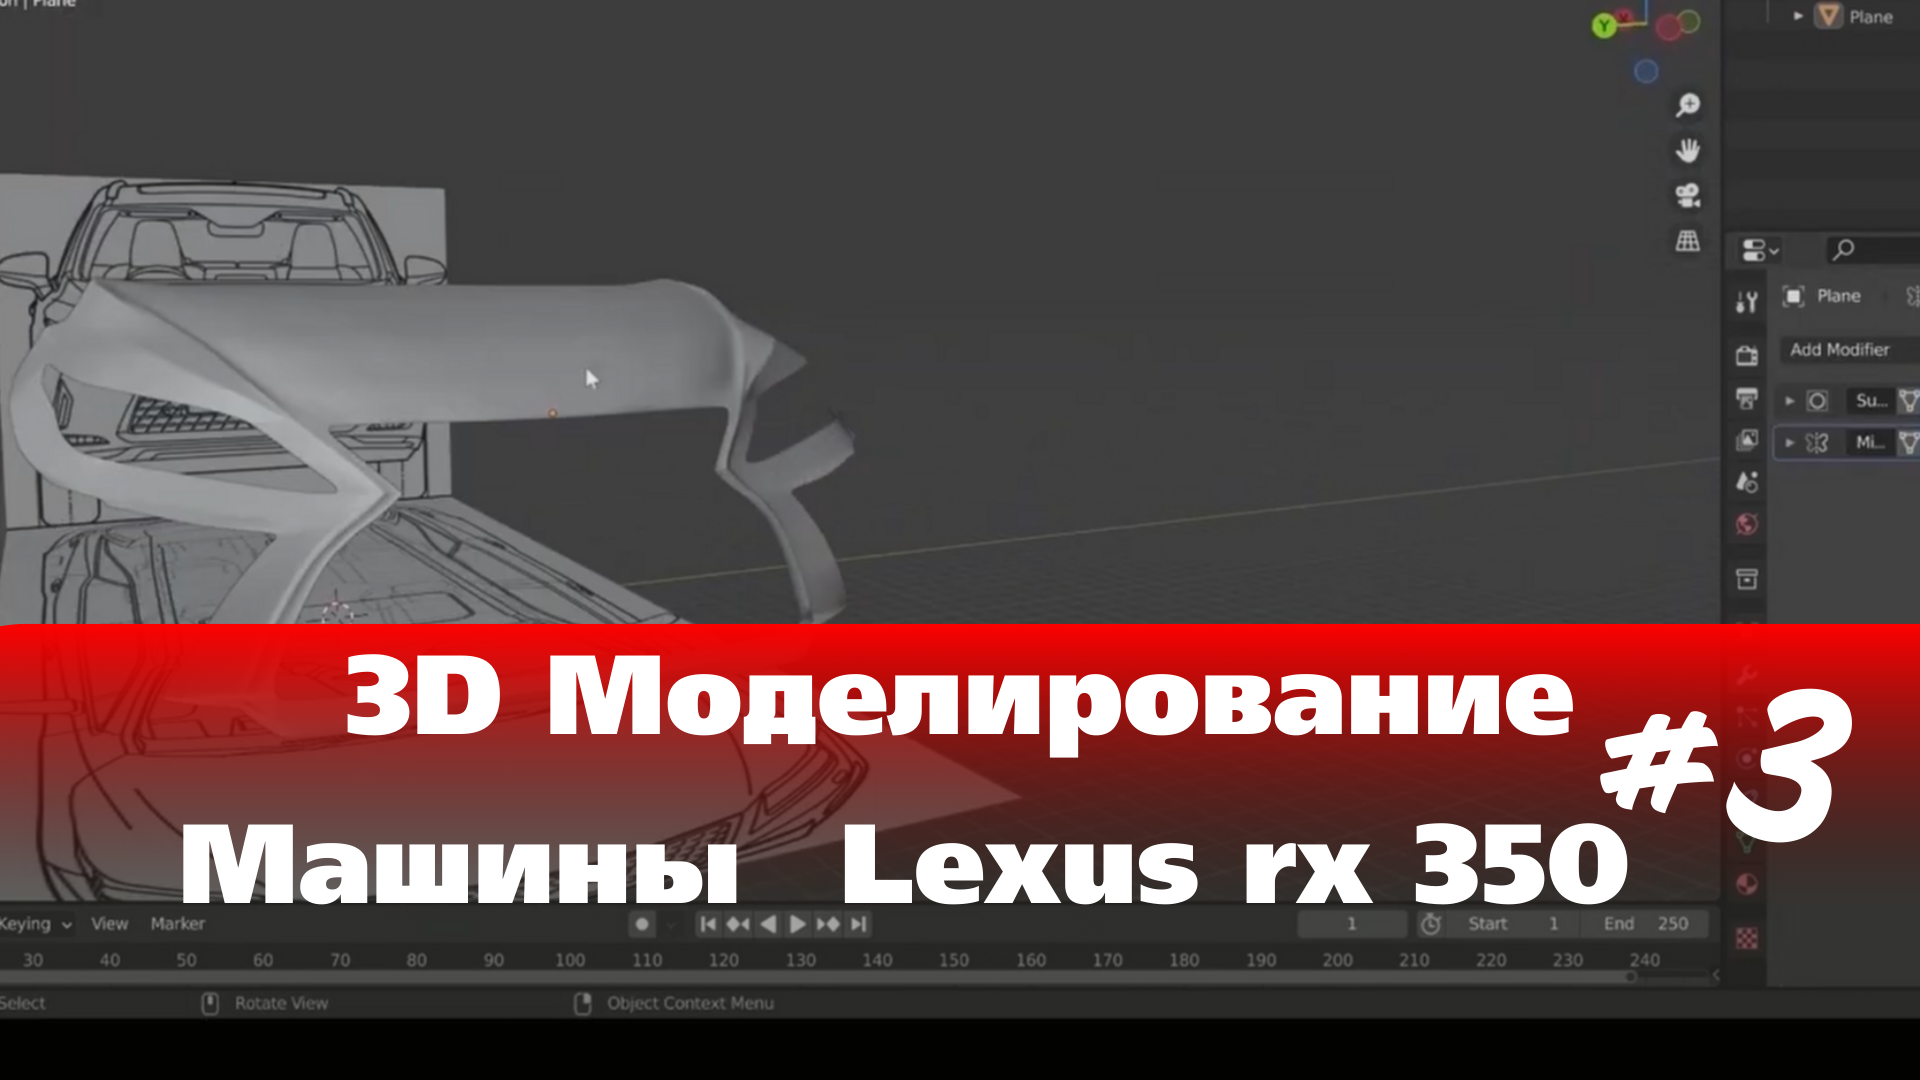 3D Моделирование Машины в Blender  - Lexus rx 350  часть 3